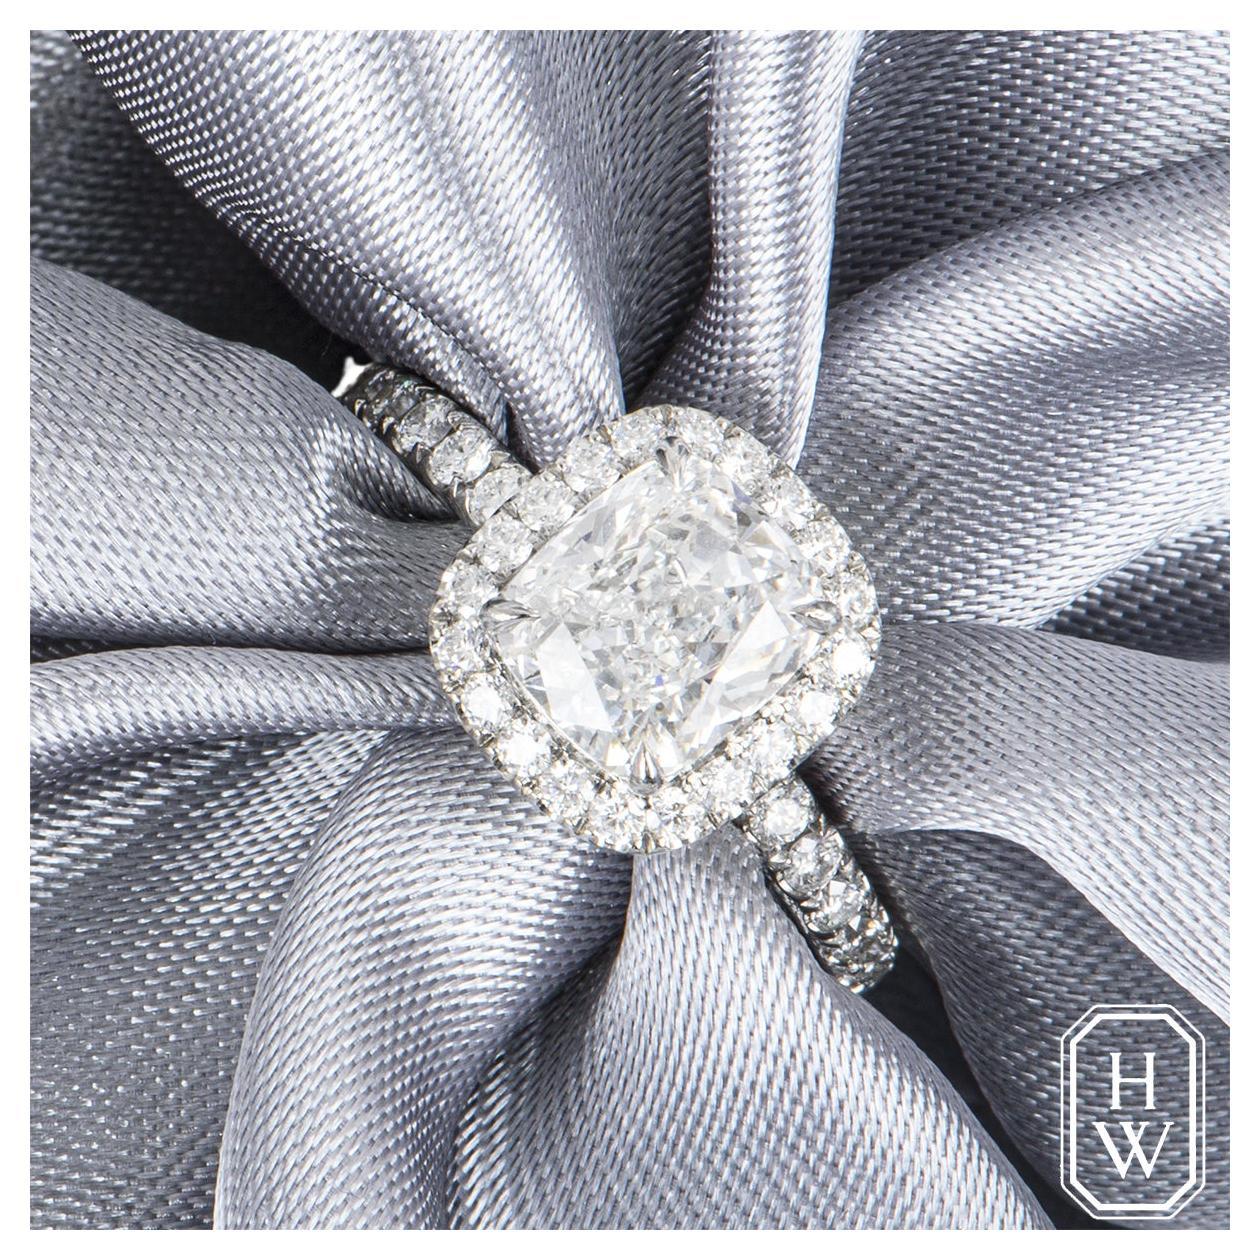 Ein glamouröser Platin-Diamant-Verlobungsring von Harry Winston aus der The One Collection. Der Ring ist in der Mitte mit einem Diamanten im Kissenschliff mit einem Gewicht von 1,76 ct, Farbe E und Reinheit VVS1 in einer Fassung mit vier Klauen